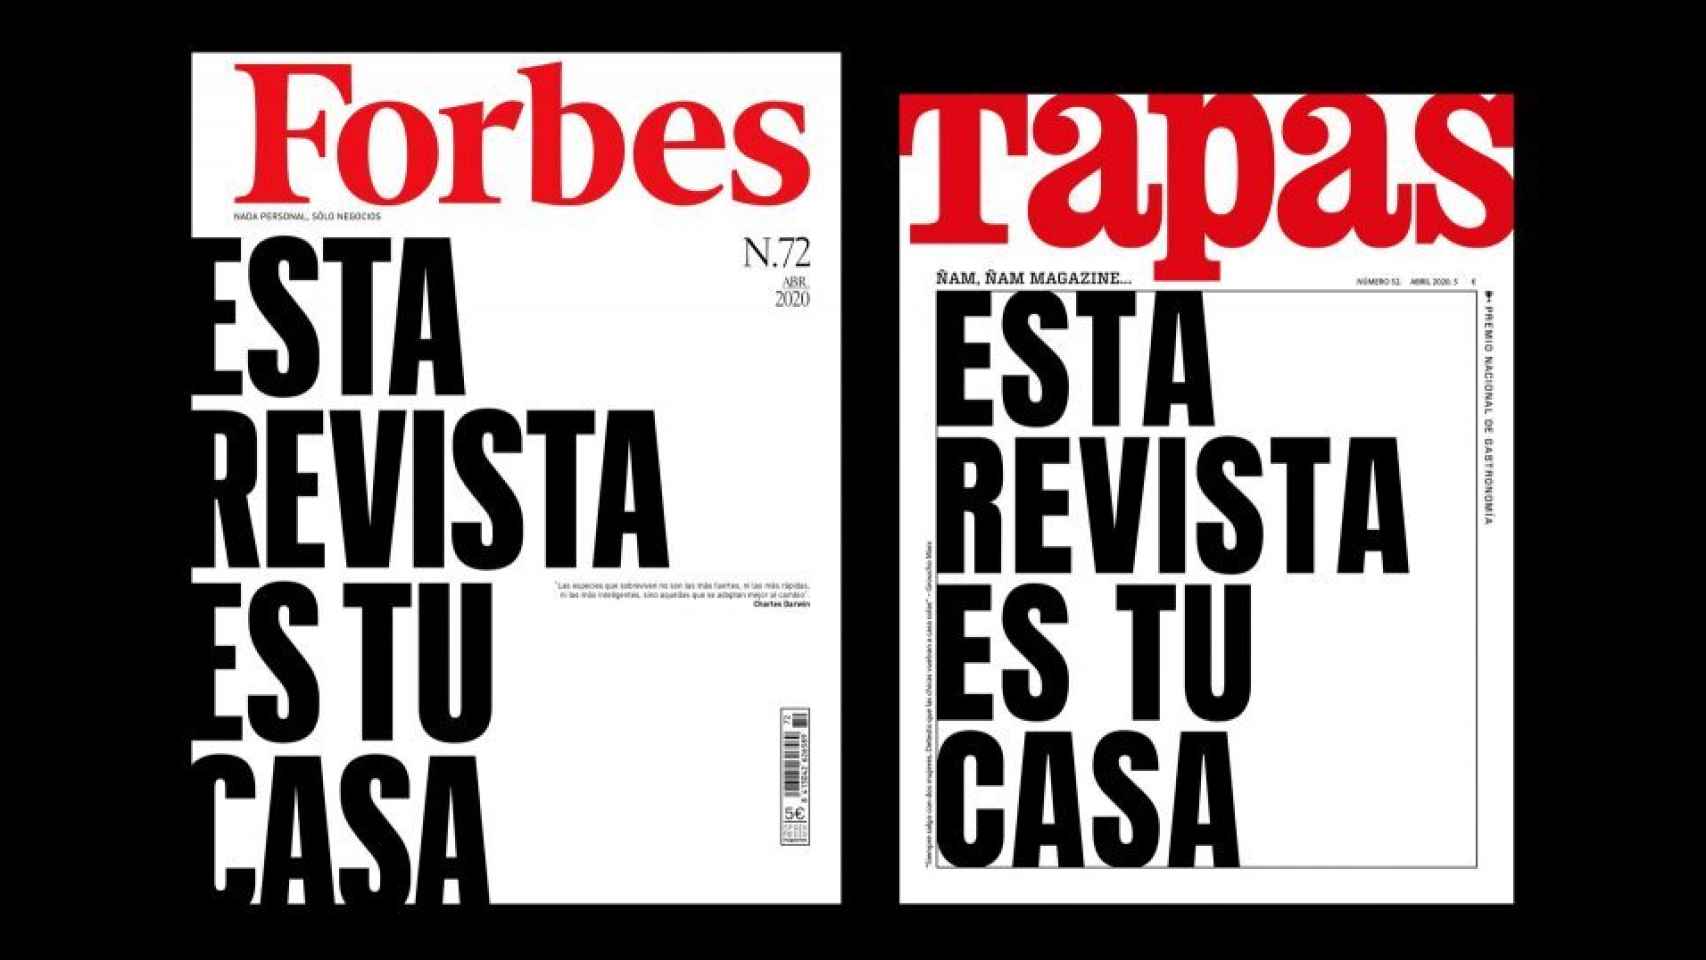 Esta revista es tu casa: Forbes y Tapas comparten portada por primera vez